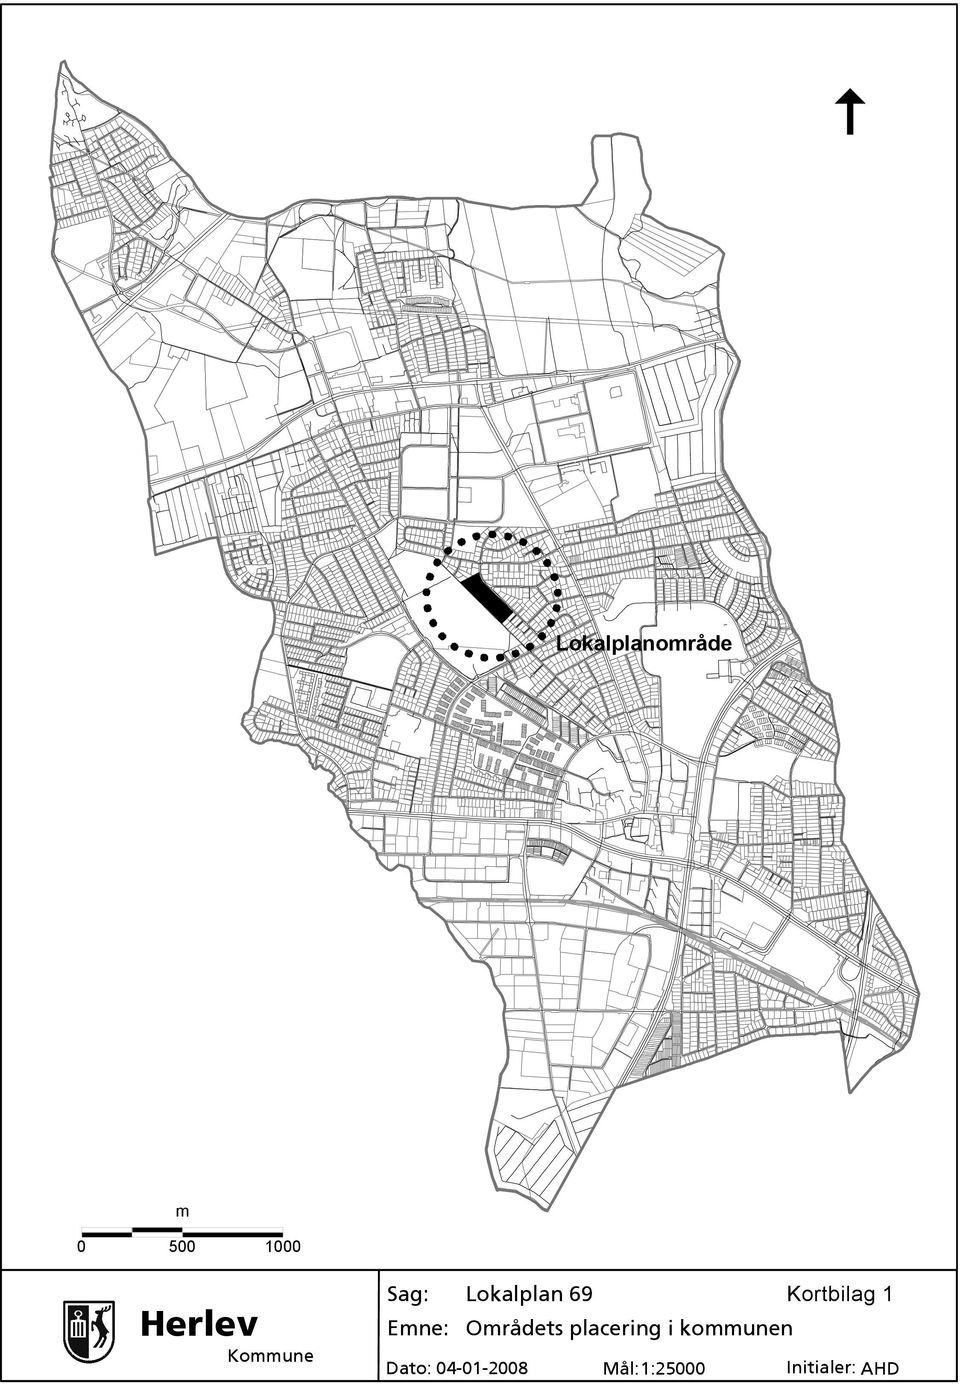 Emne: Områdets placering i kommunen